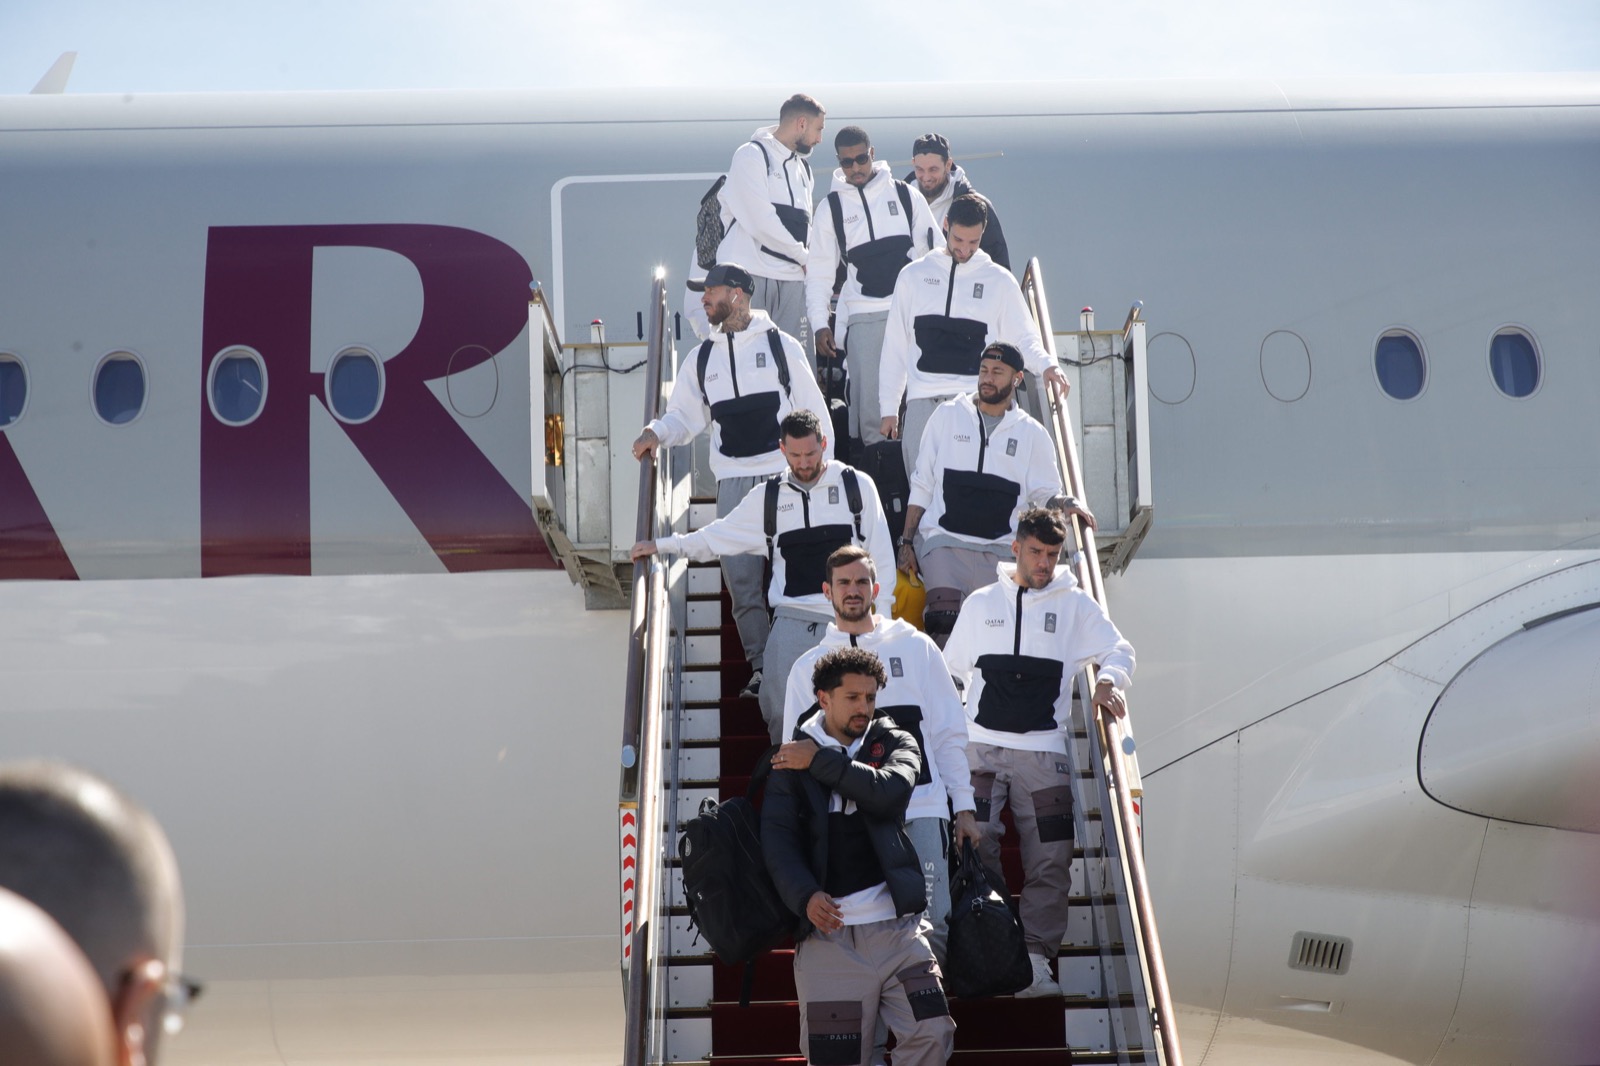 Paris Saint-Germain head to Qatar for traditional Winter Tour plus friendly  in Riyadh